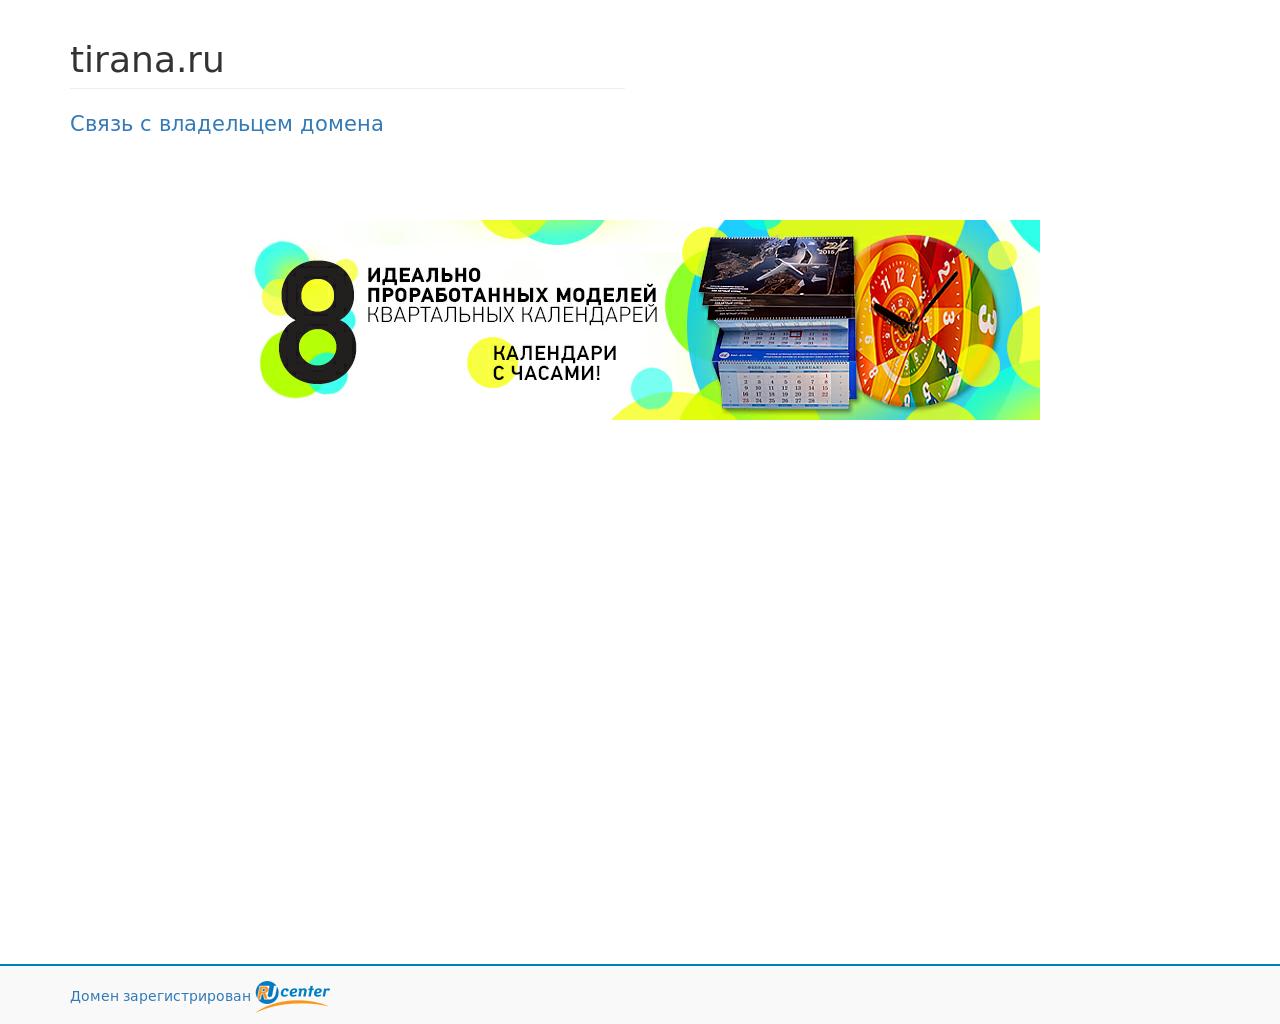 Изображение сайта tirana.ru в разрешении 1280x1024